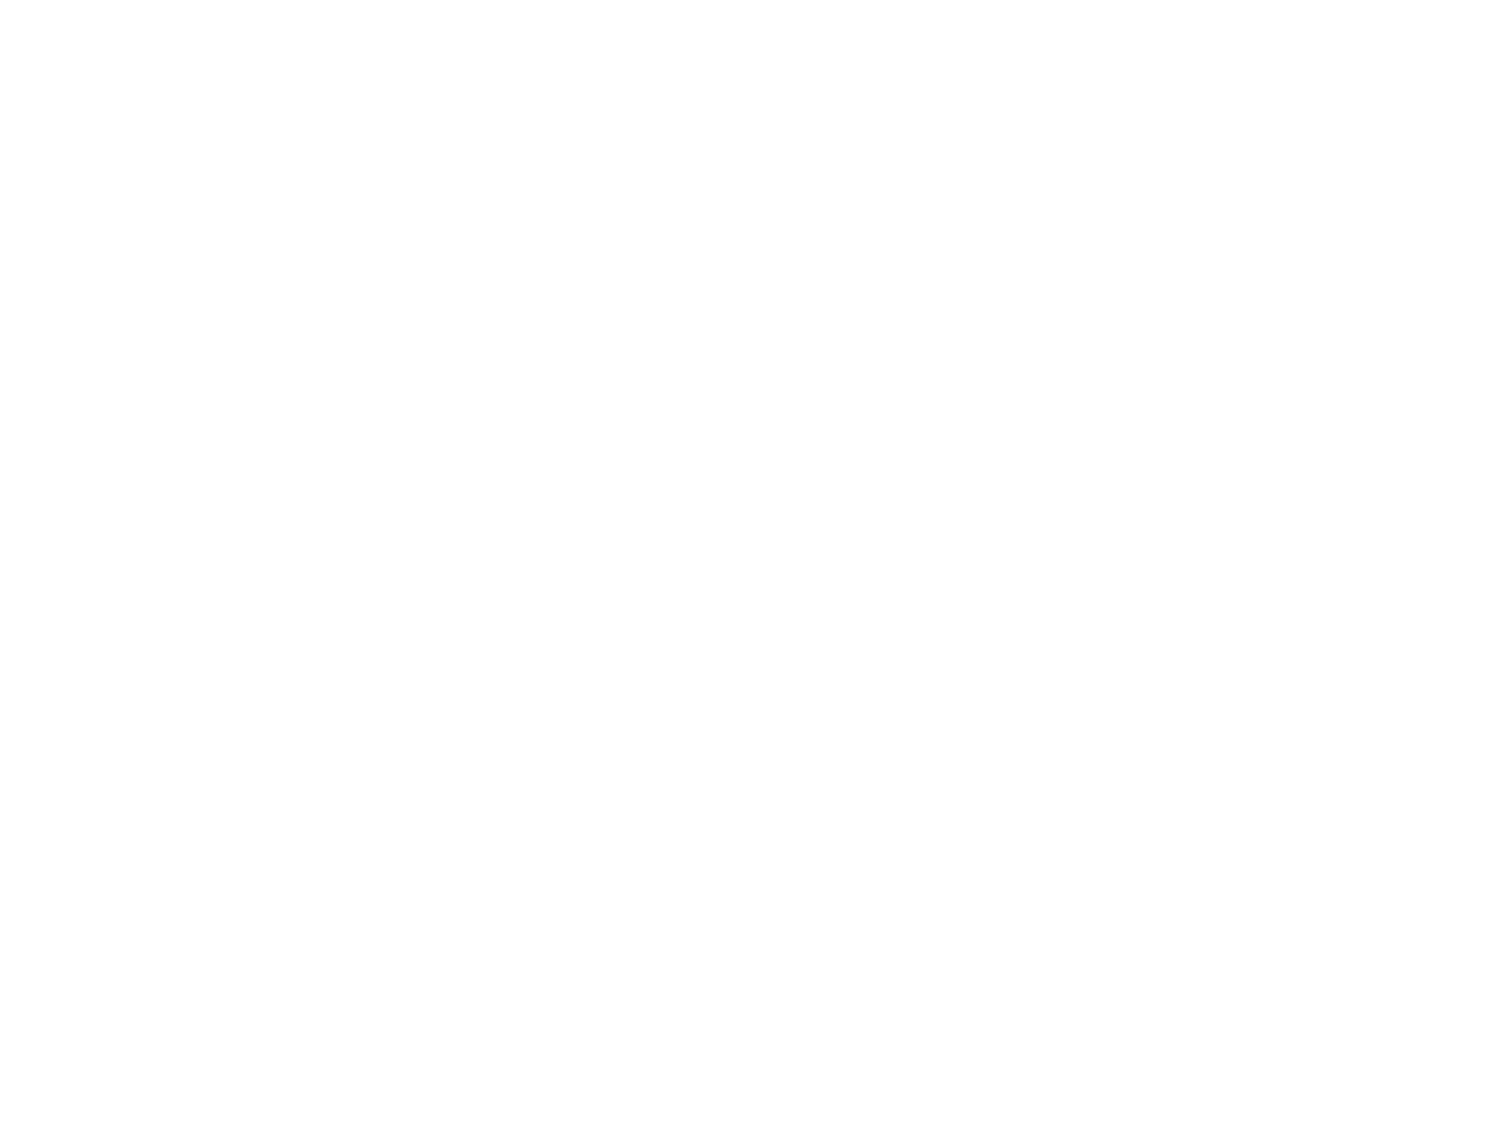 Nature's Own Breckenridge Rock & Fossil Shop